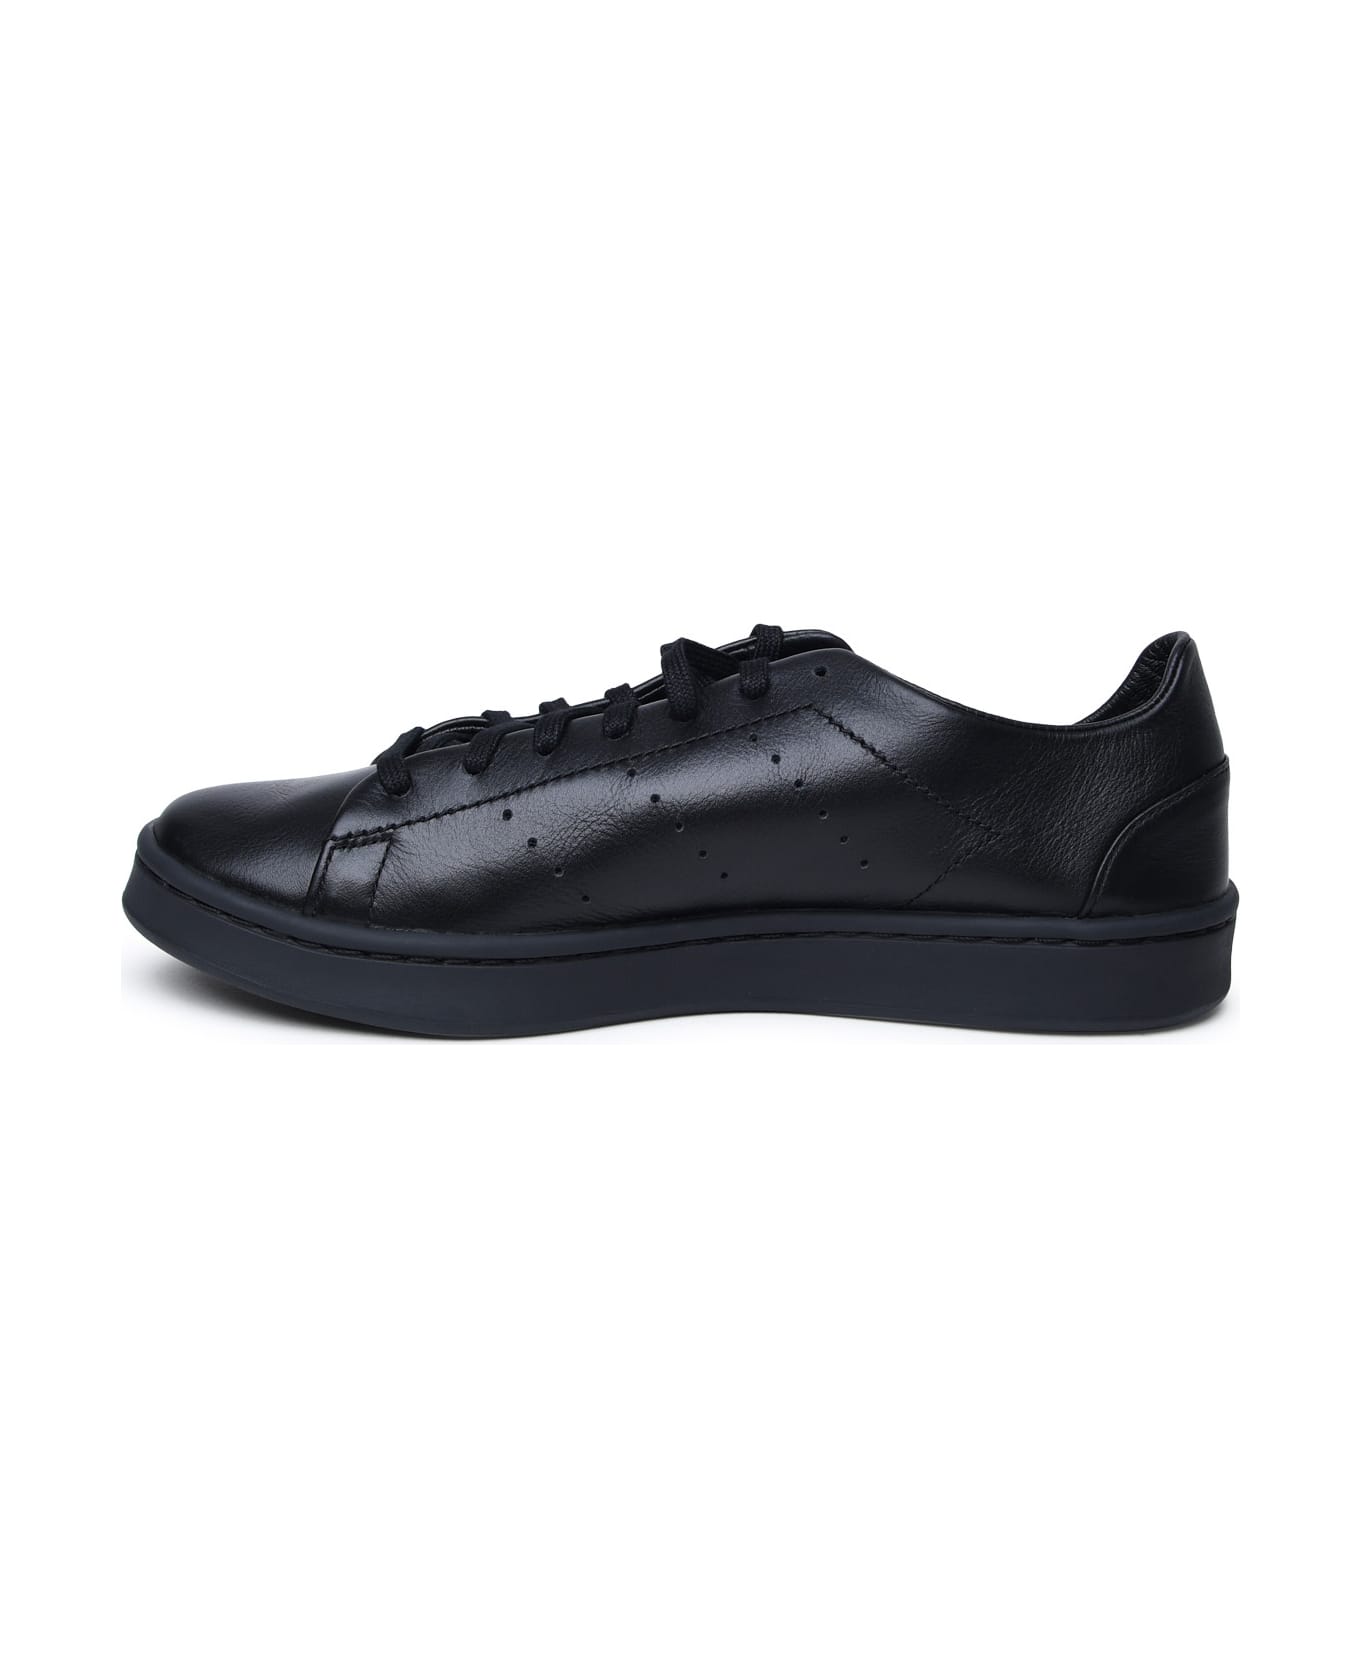 Y-3 Black Leather Sneakers - BLACKBLACKBLACK スニーカー